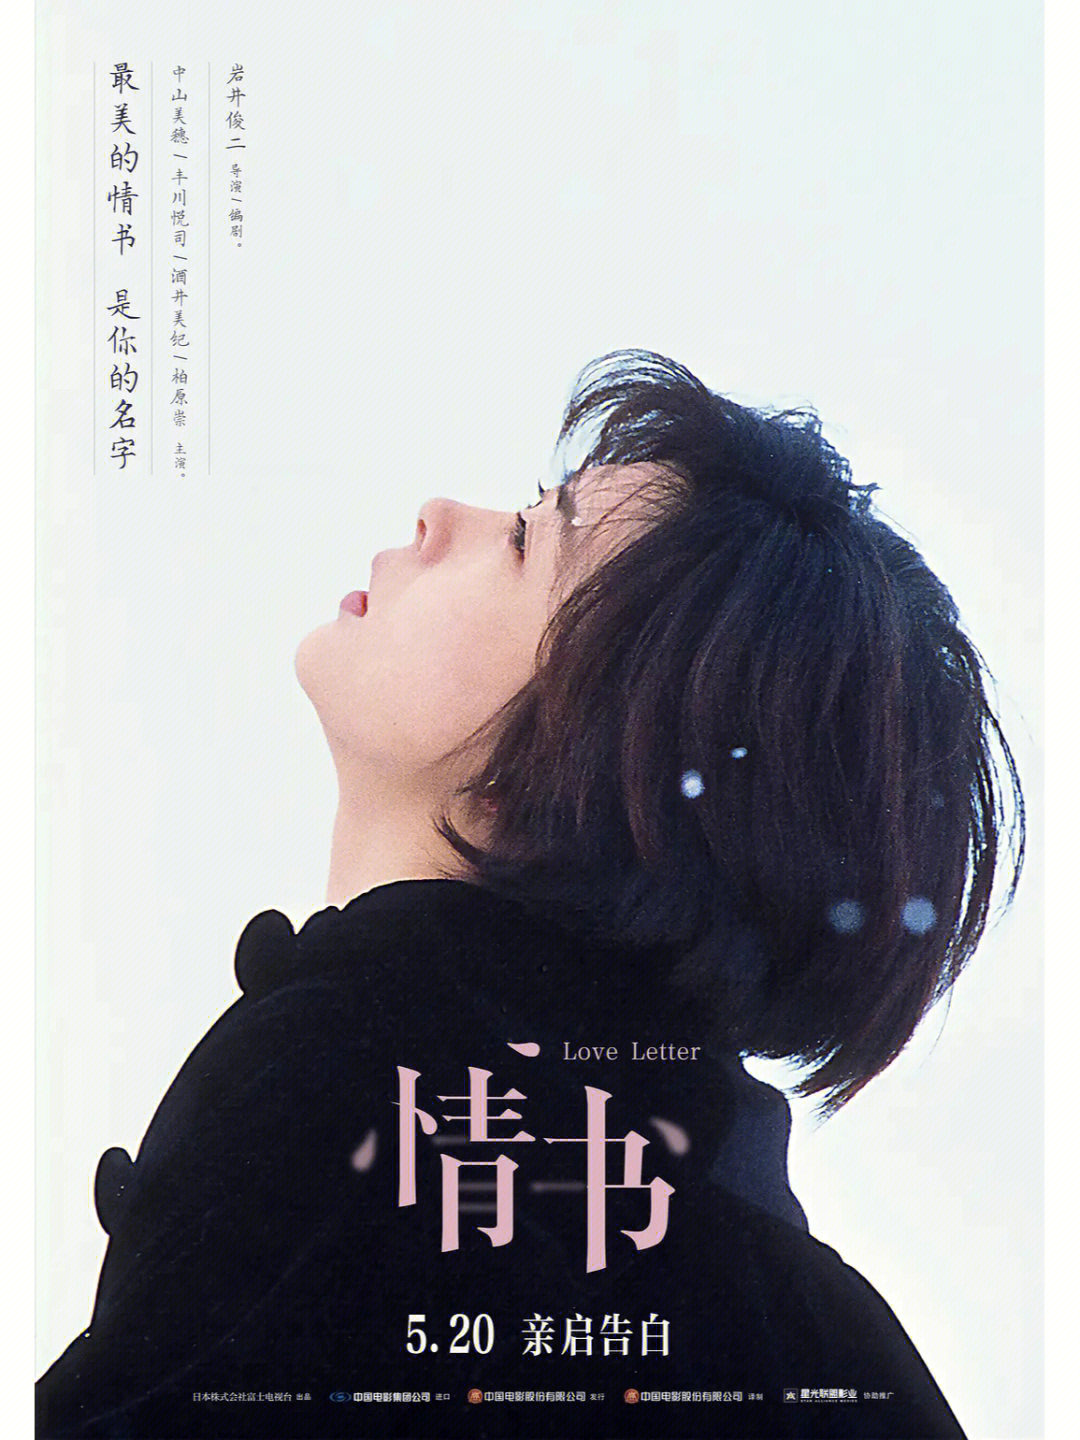 《情书》是由岩井俊二执导,中山美穗,丰川悦司,柏原崇等主演的爱情